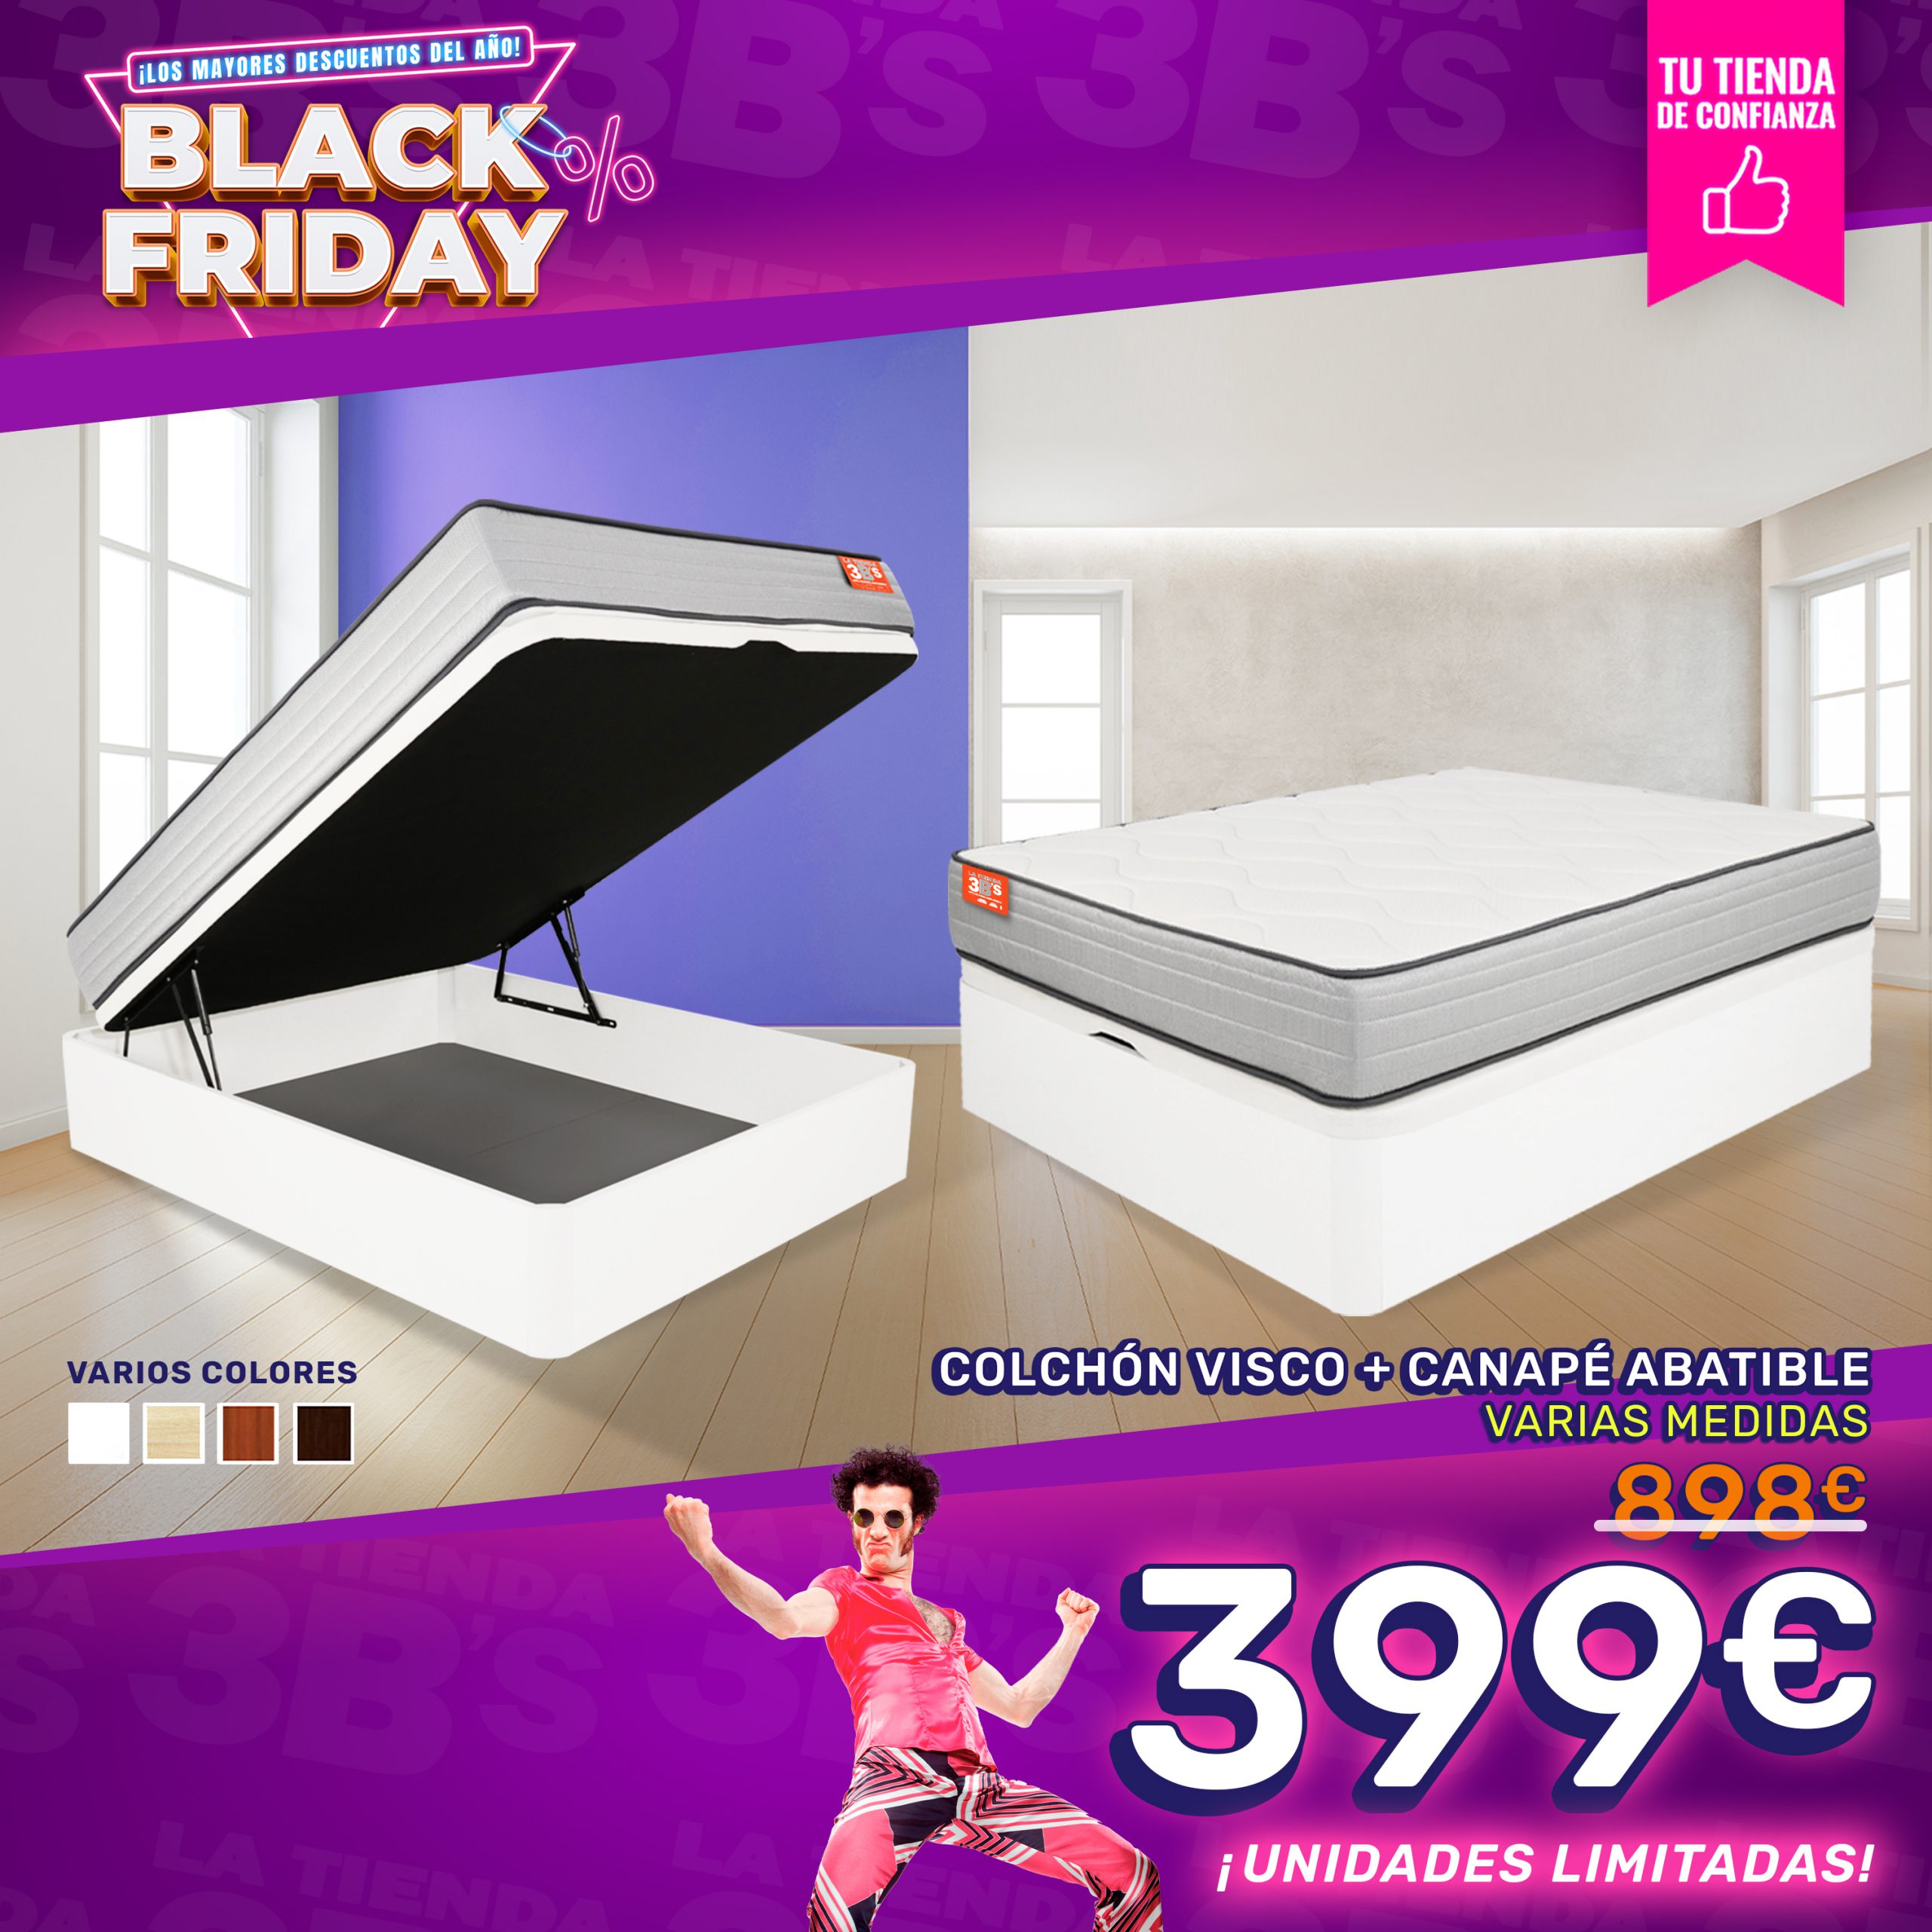 BlackFriday2022 Promo Pack Colchon y canape palma 3 web | La Tienda 3Bs